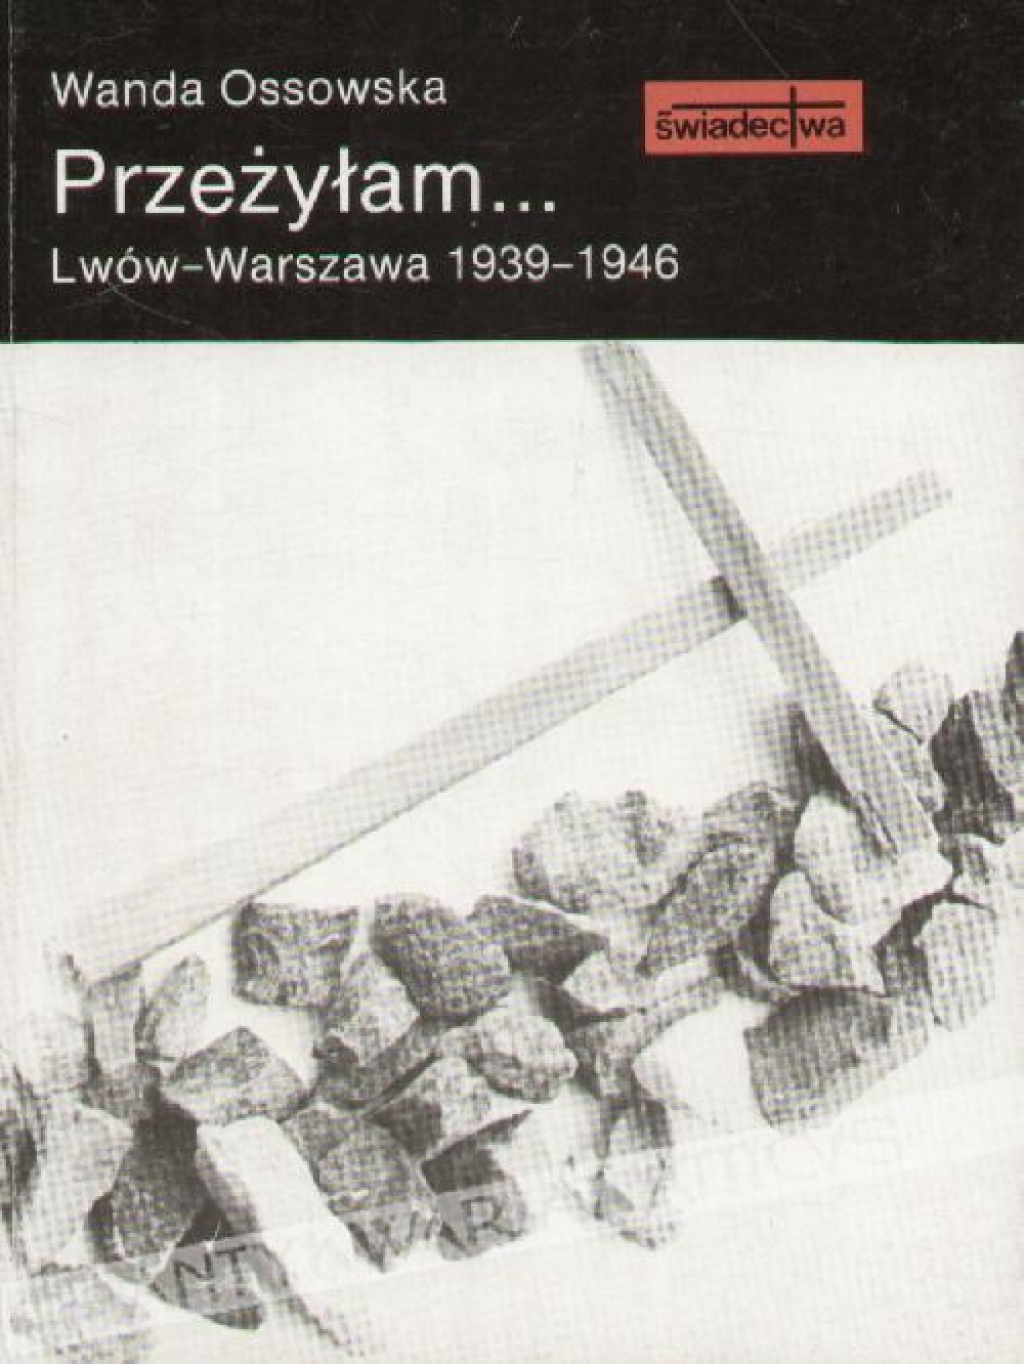 Przeżyłam... Lwów-Warszawa 1939-1946 [autograf autorki]